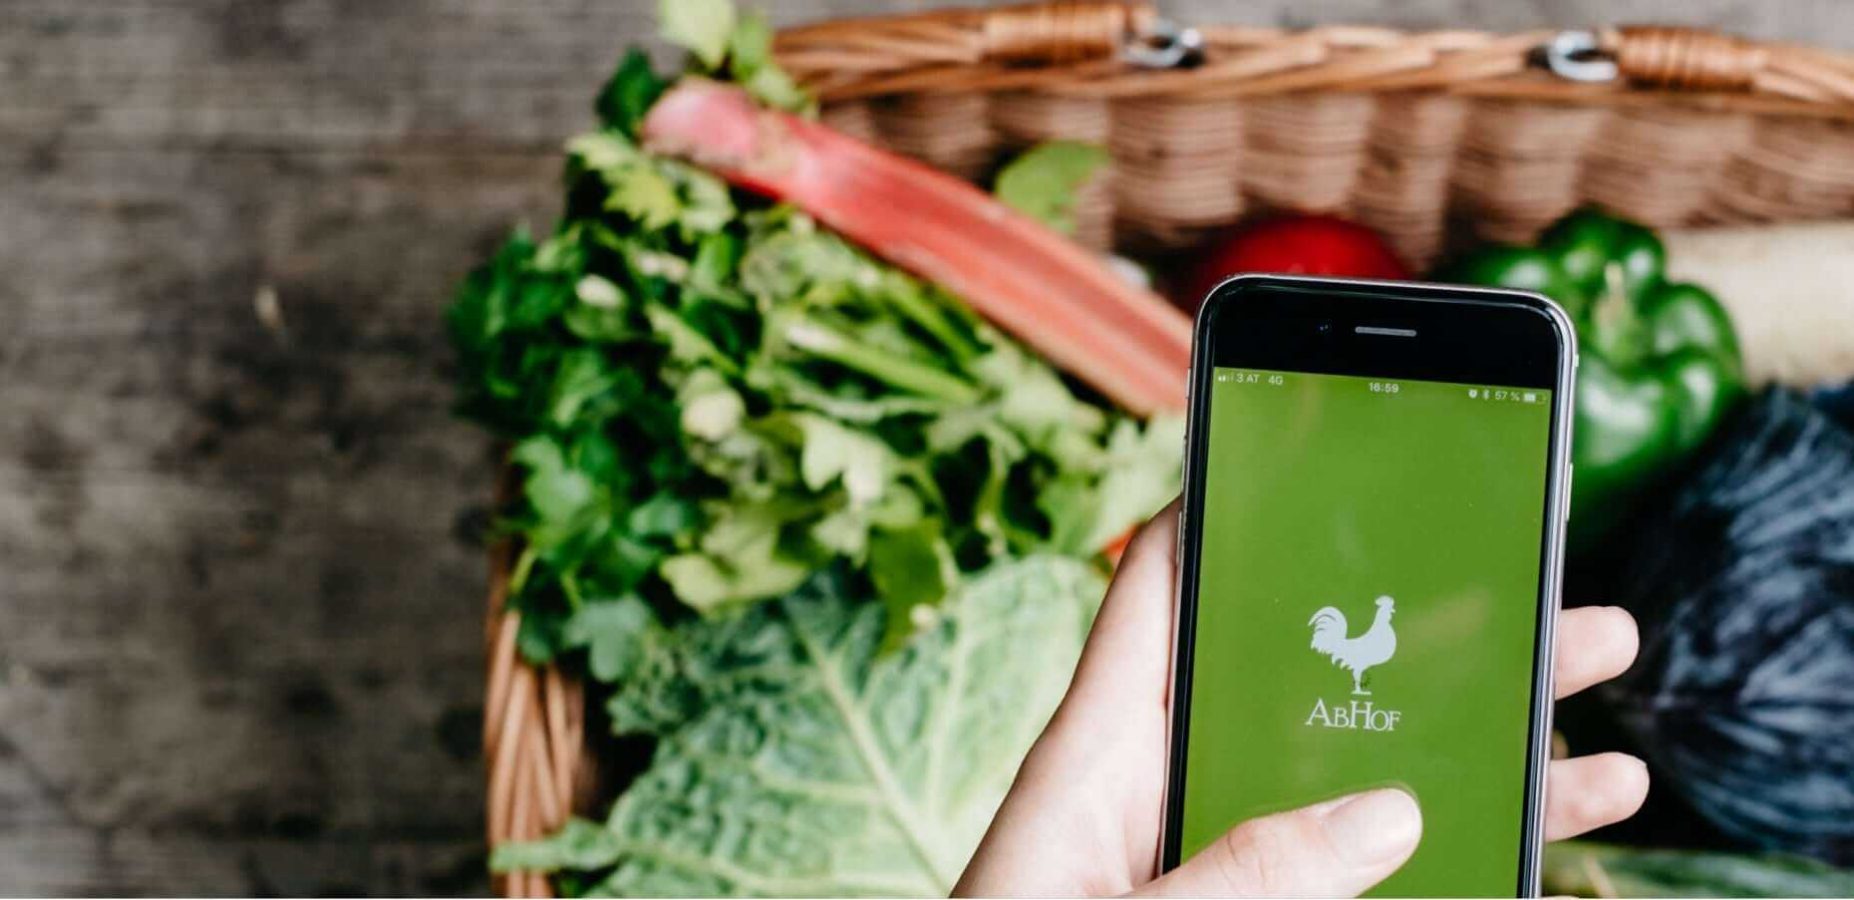 Die Abhof App im Fokus mit Gemüse im Hintergrund